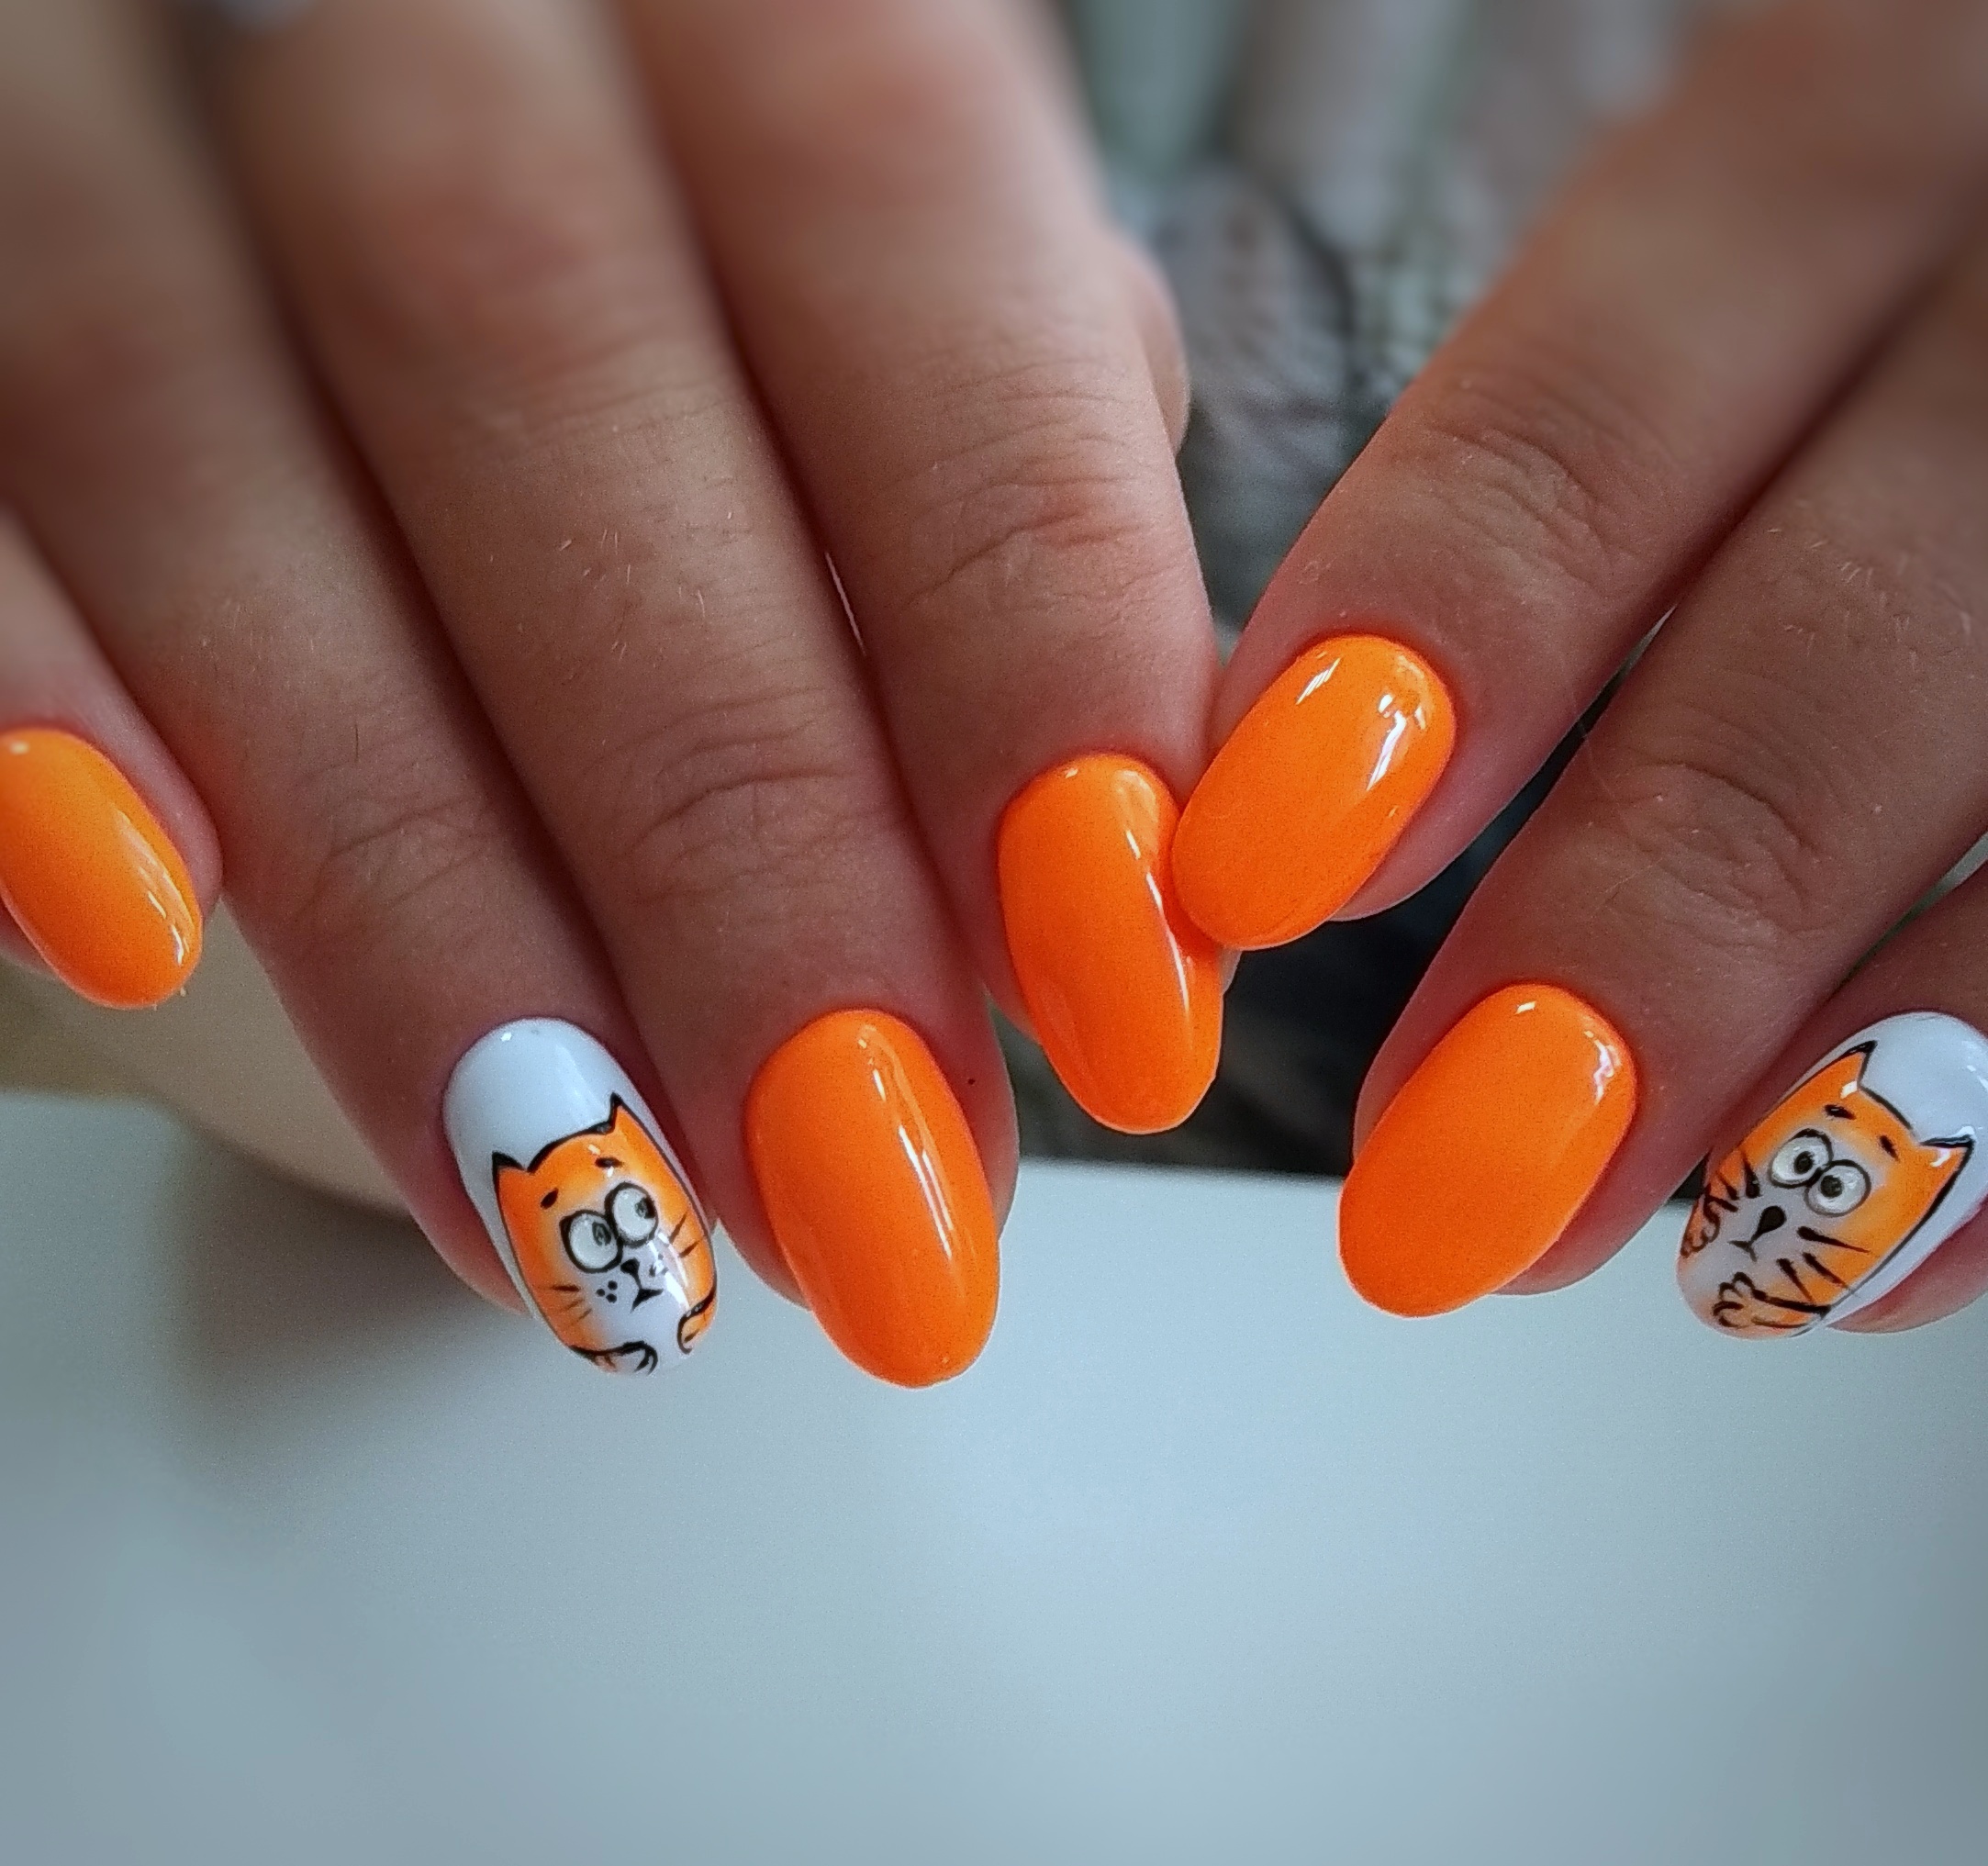 Маникюр в оранжевом цвете с белым дизайном и мультяшным рисунком "котики".